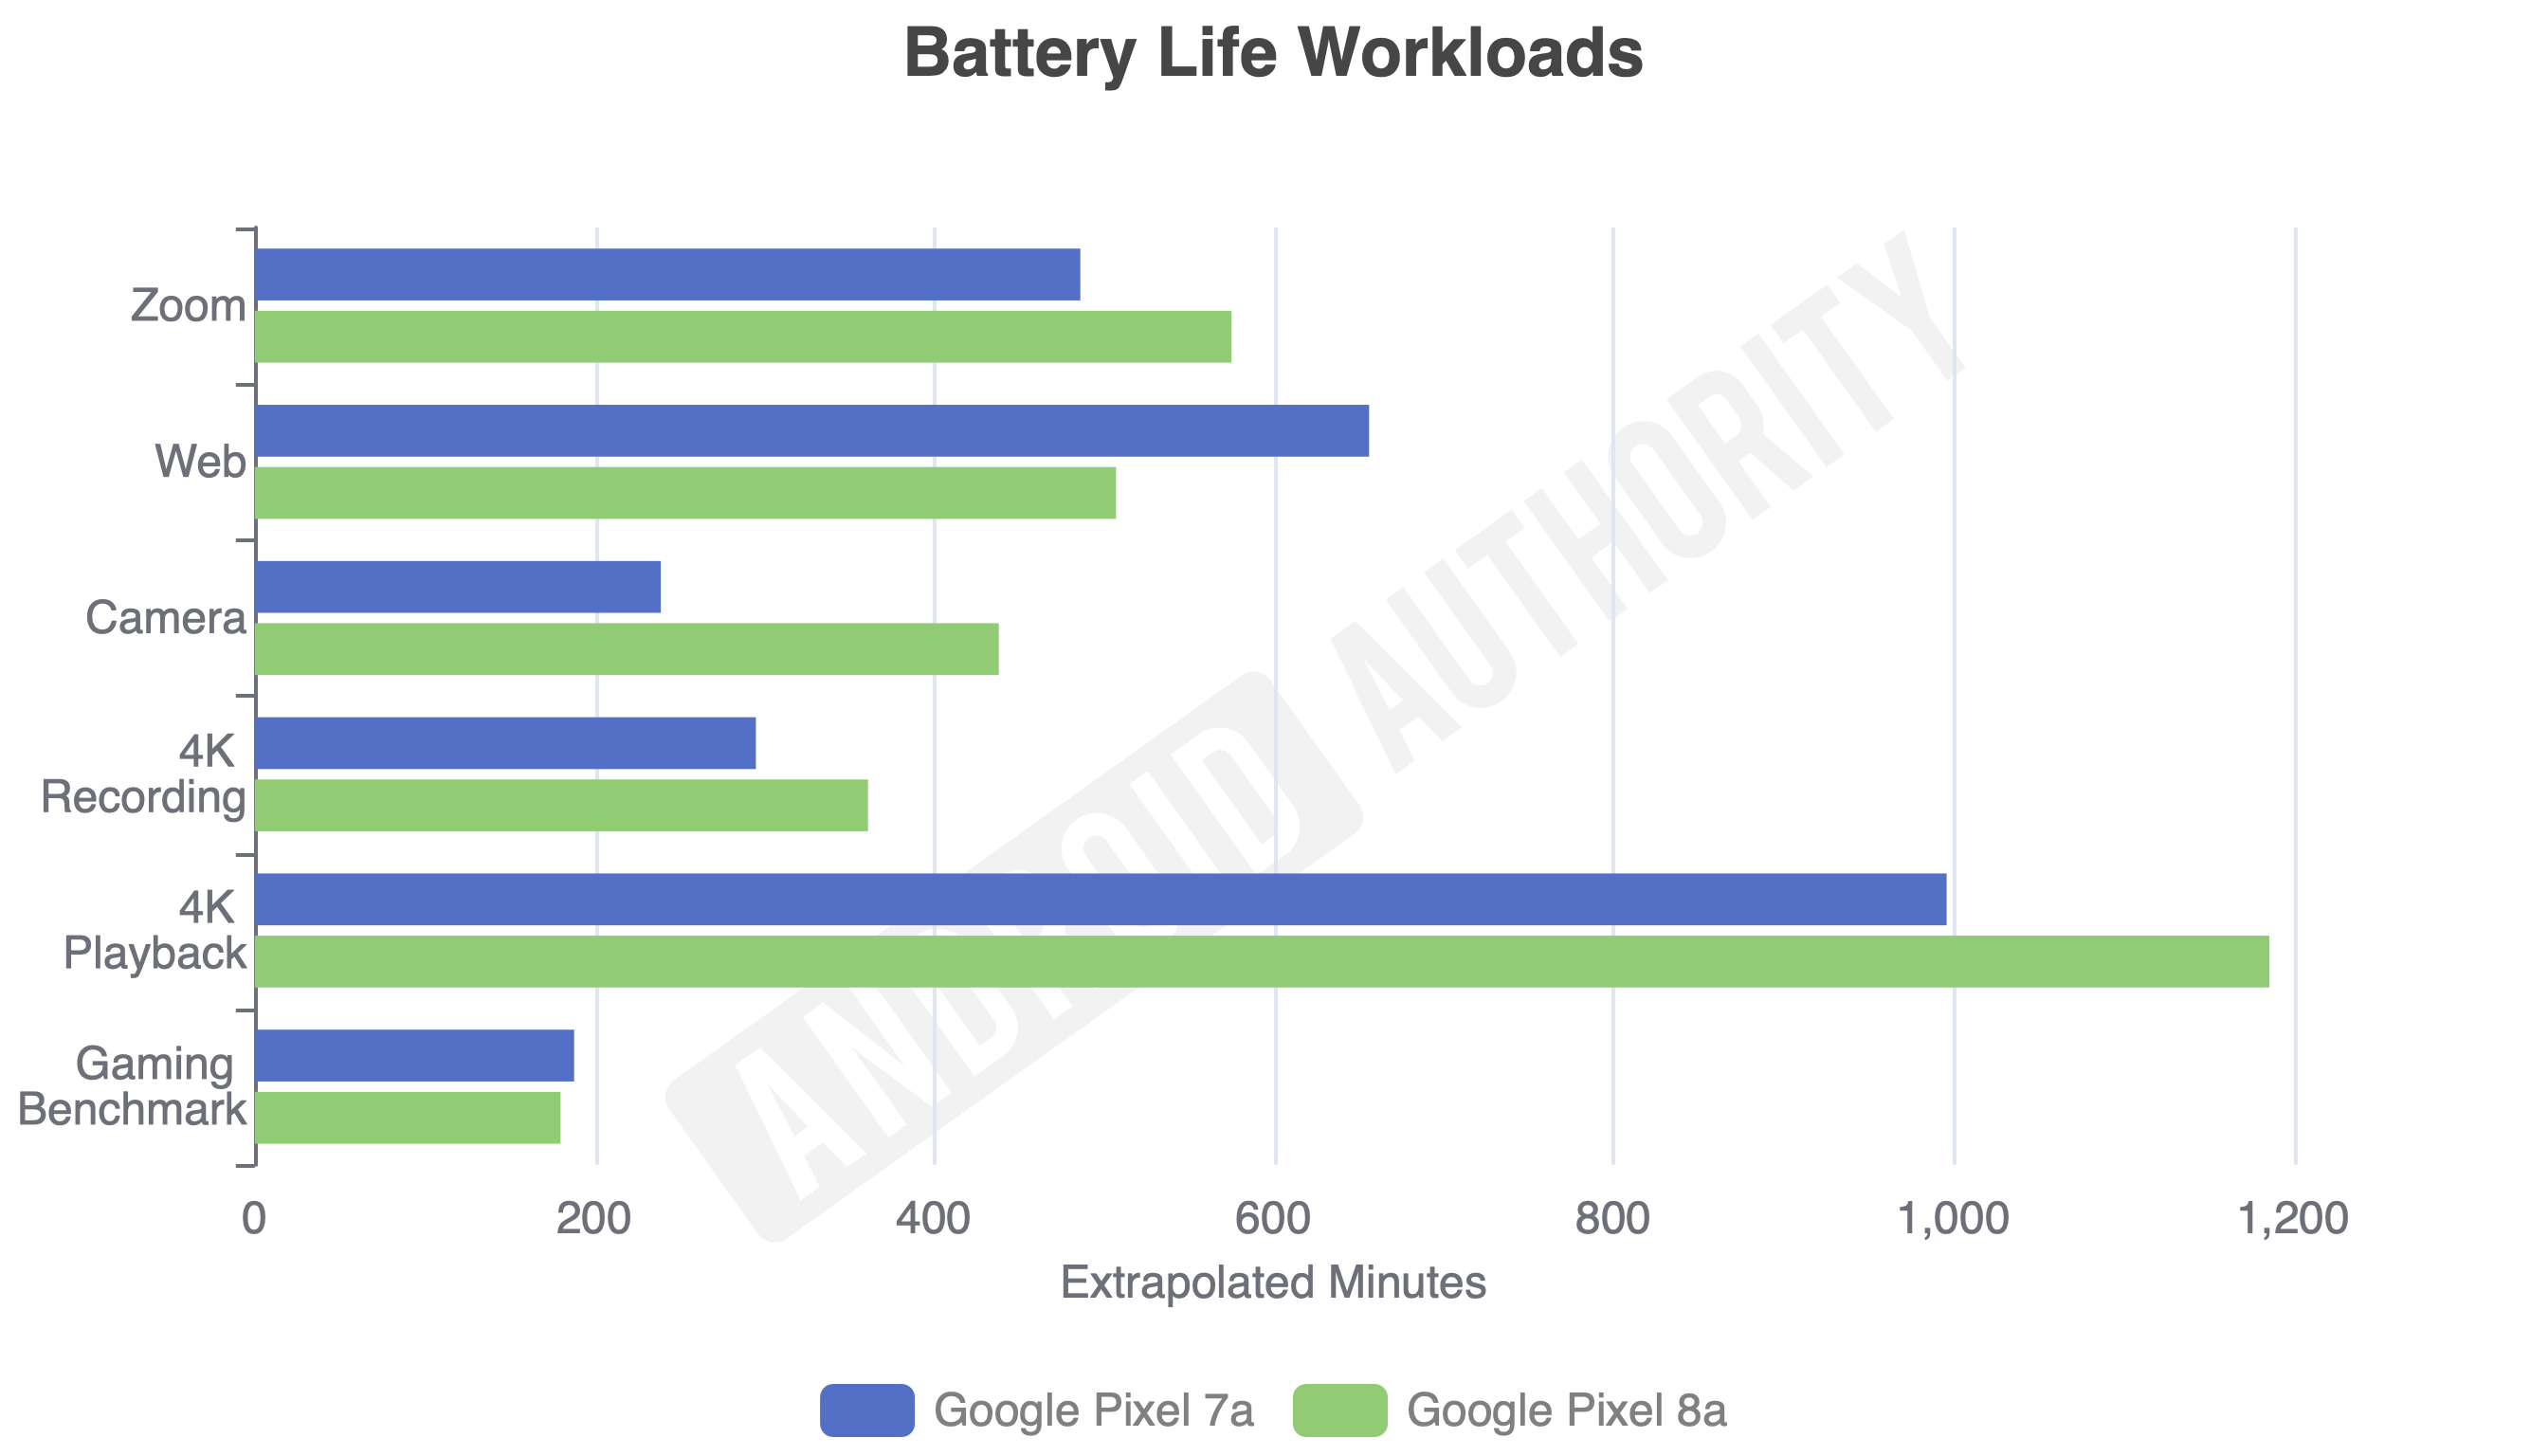 Google Pixel 8a vs Pixel 7a battery life